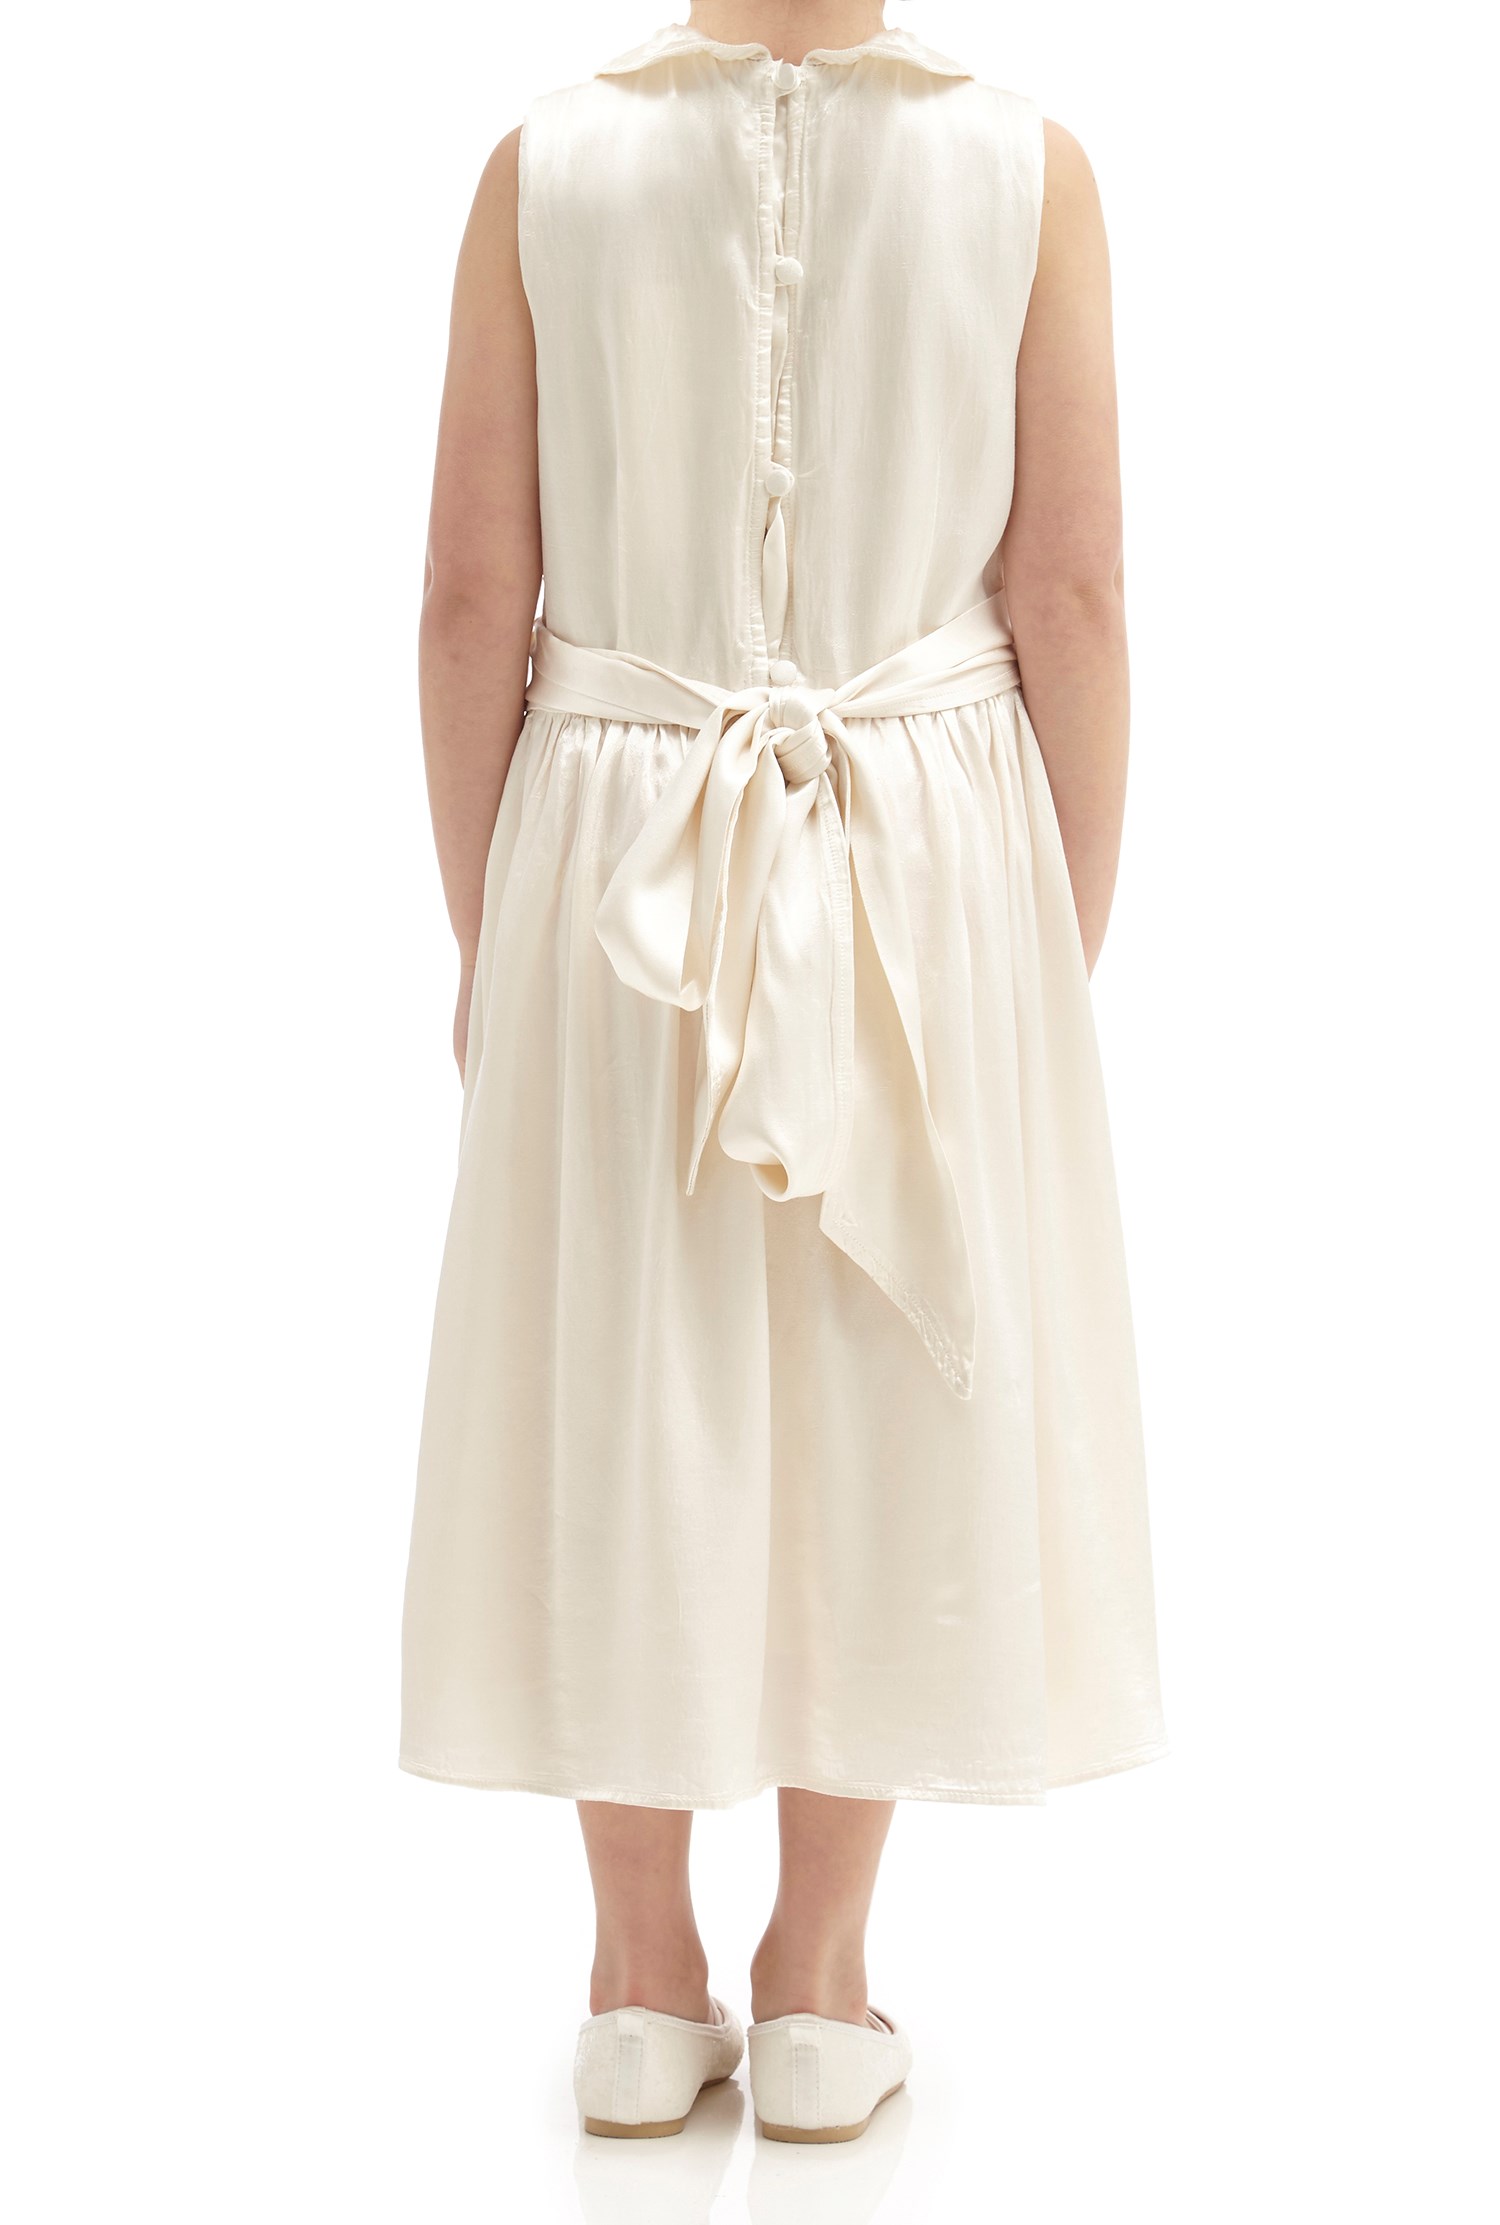 Millie Flower Girl Dress - Ivory | Ghost.co.uk